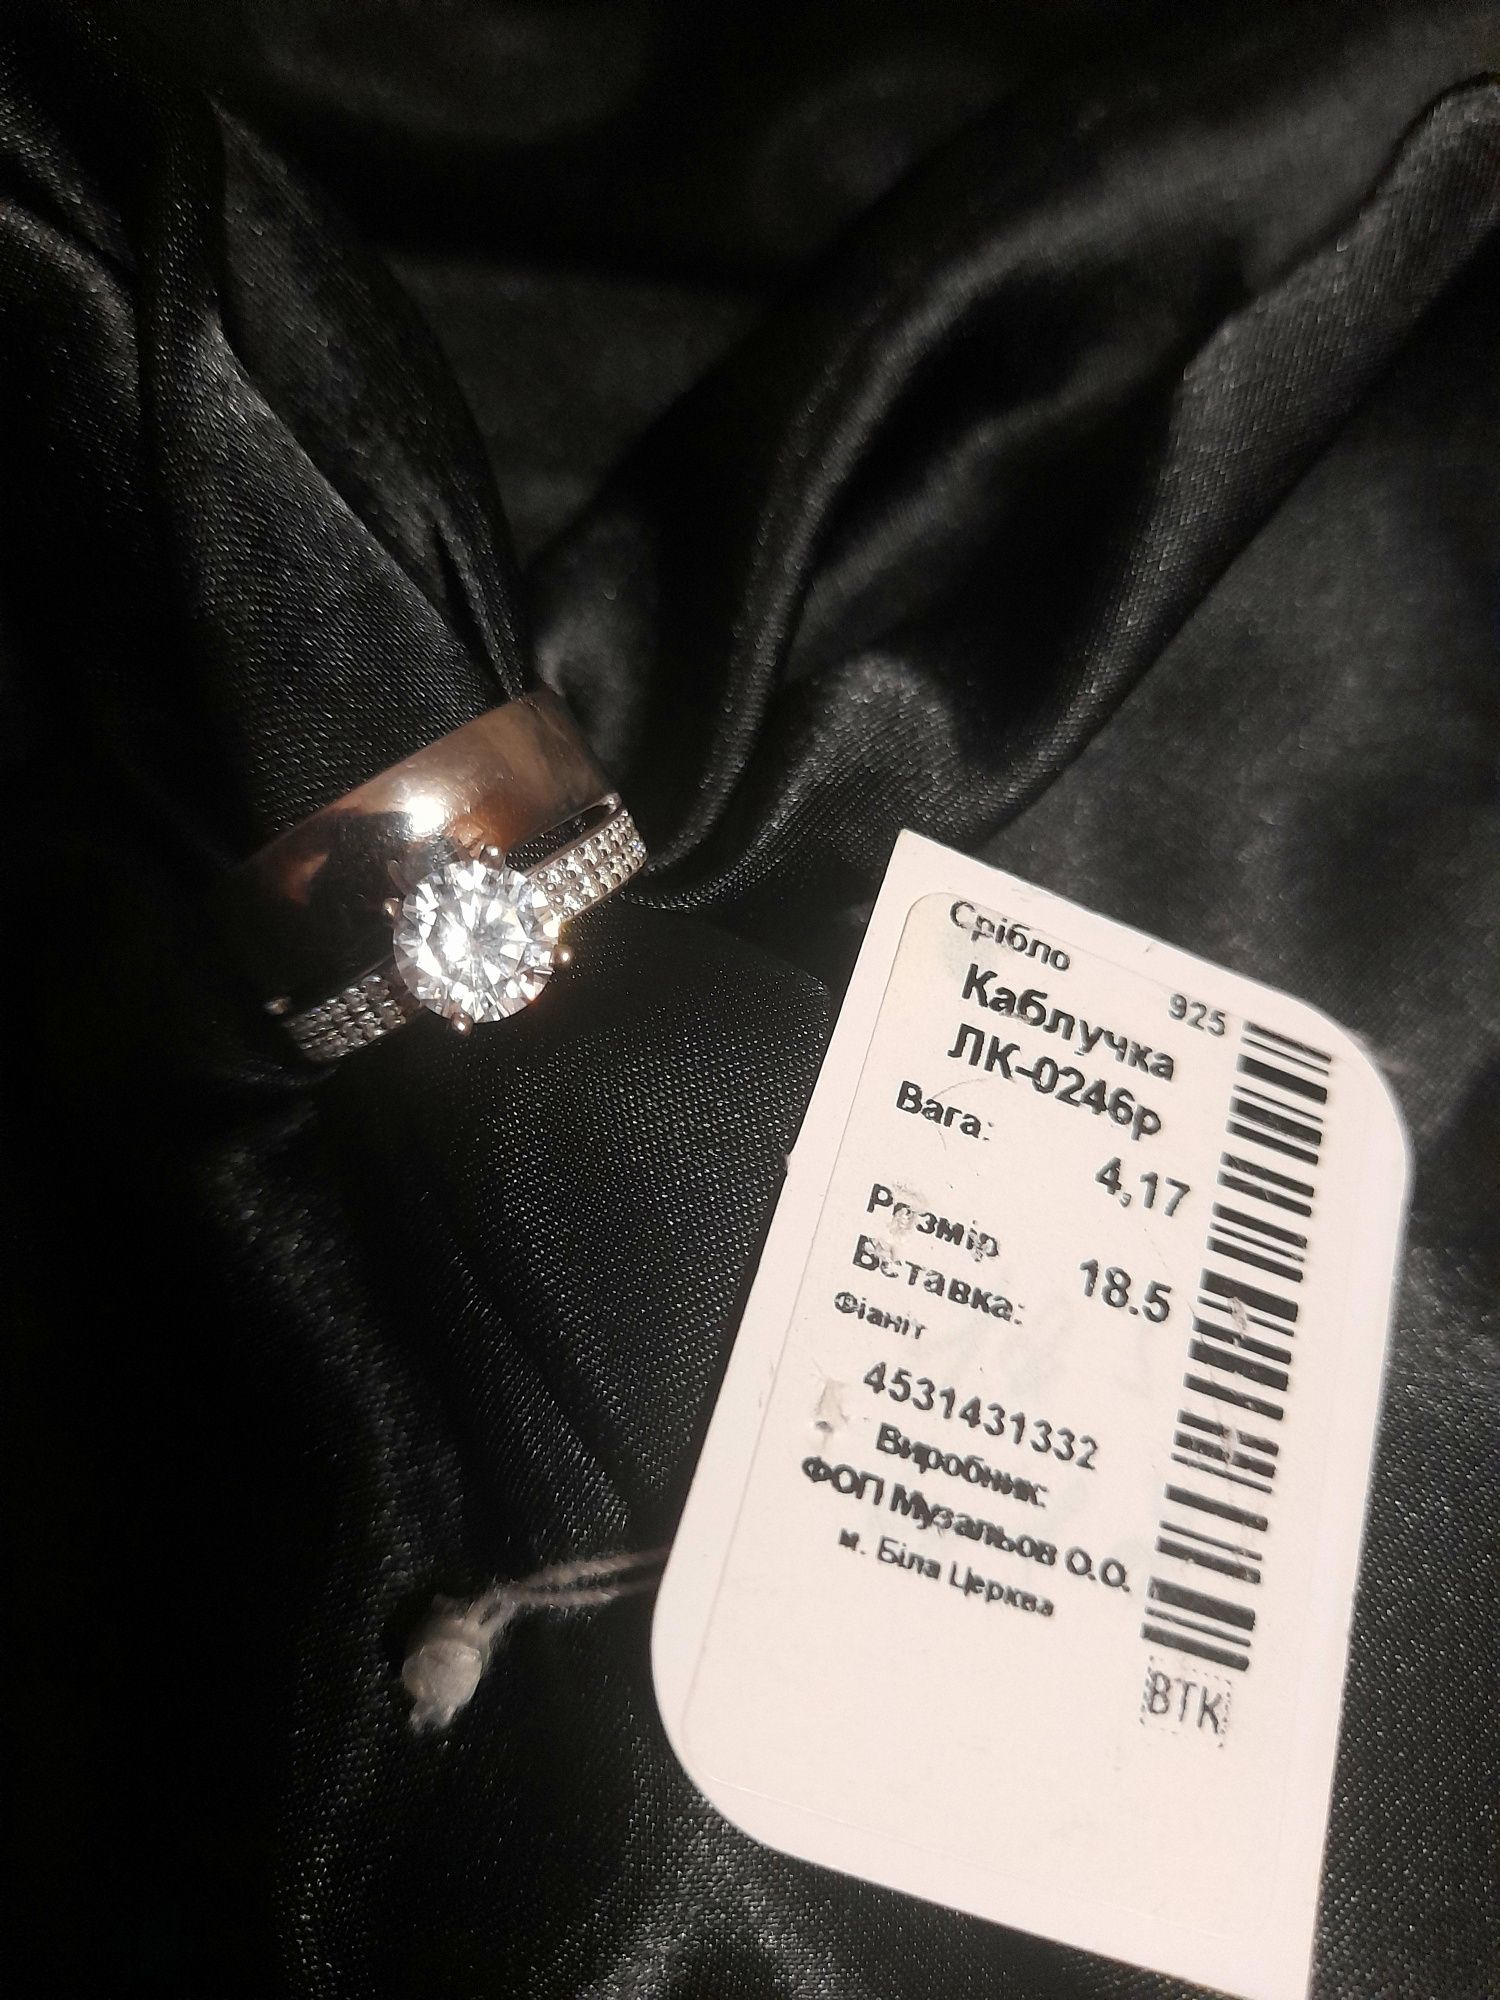 Двойное серебряное кольцо с фианитами